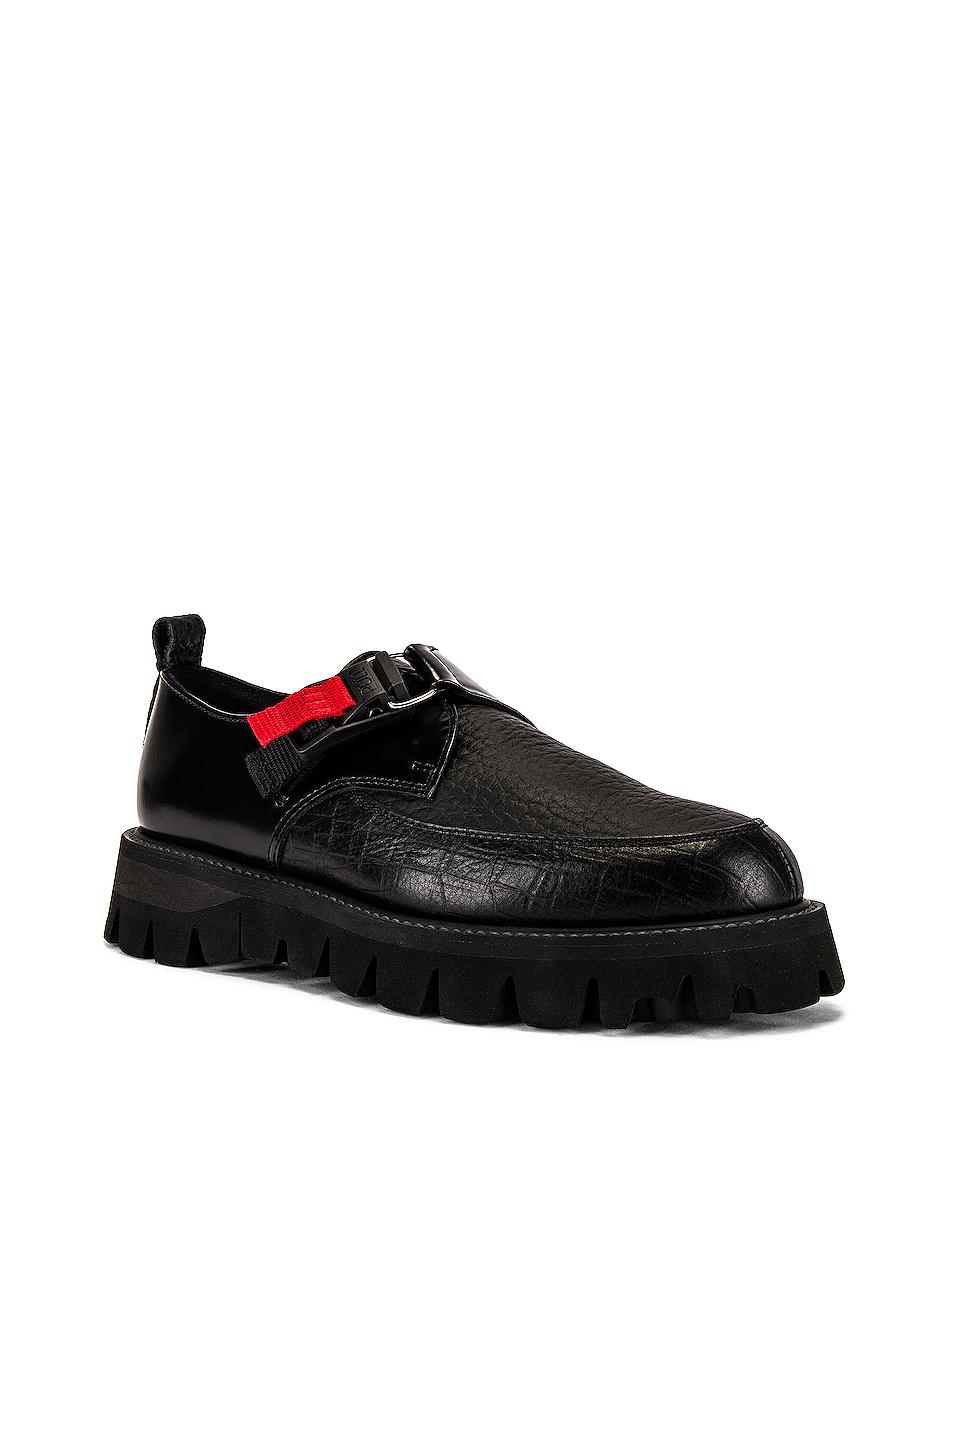 Hender Scheme Slip-on shoes for Men | Online Sale up to 60% off 